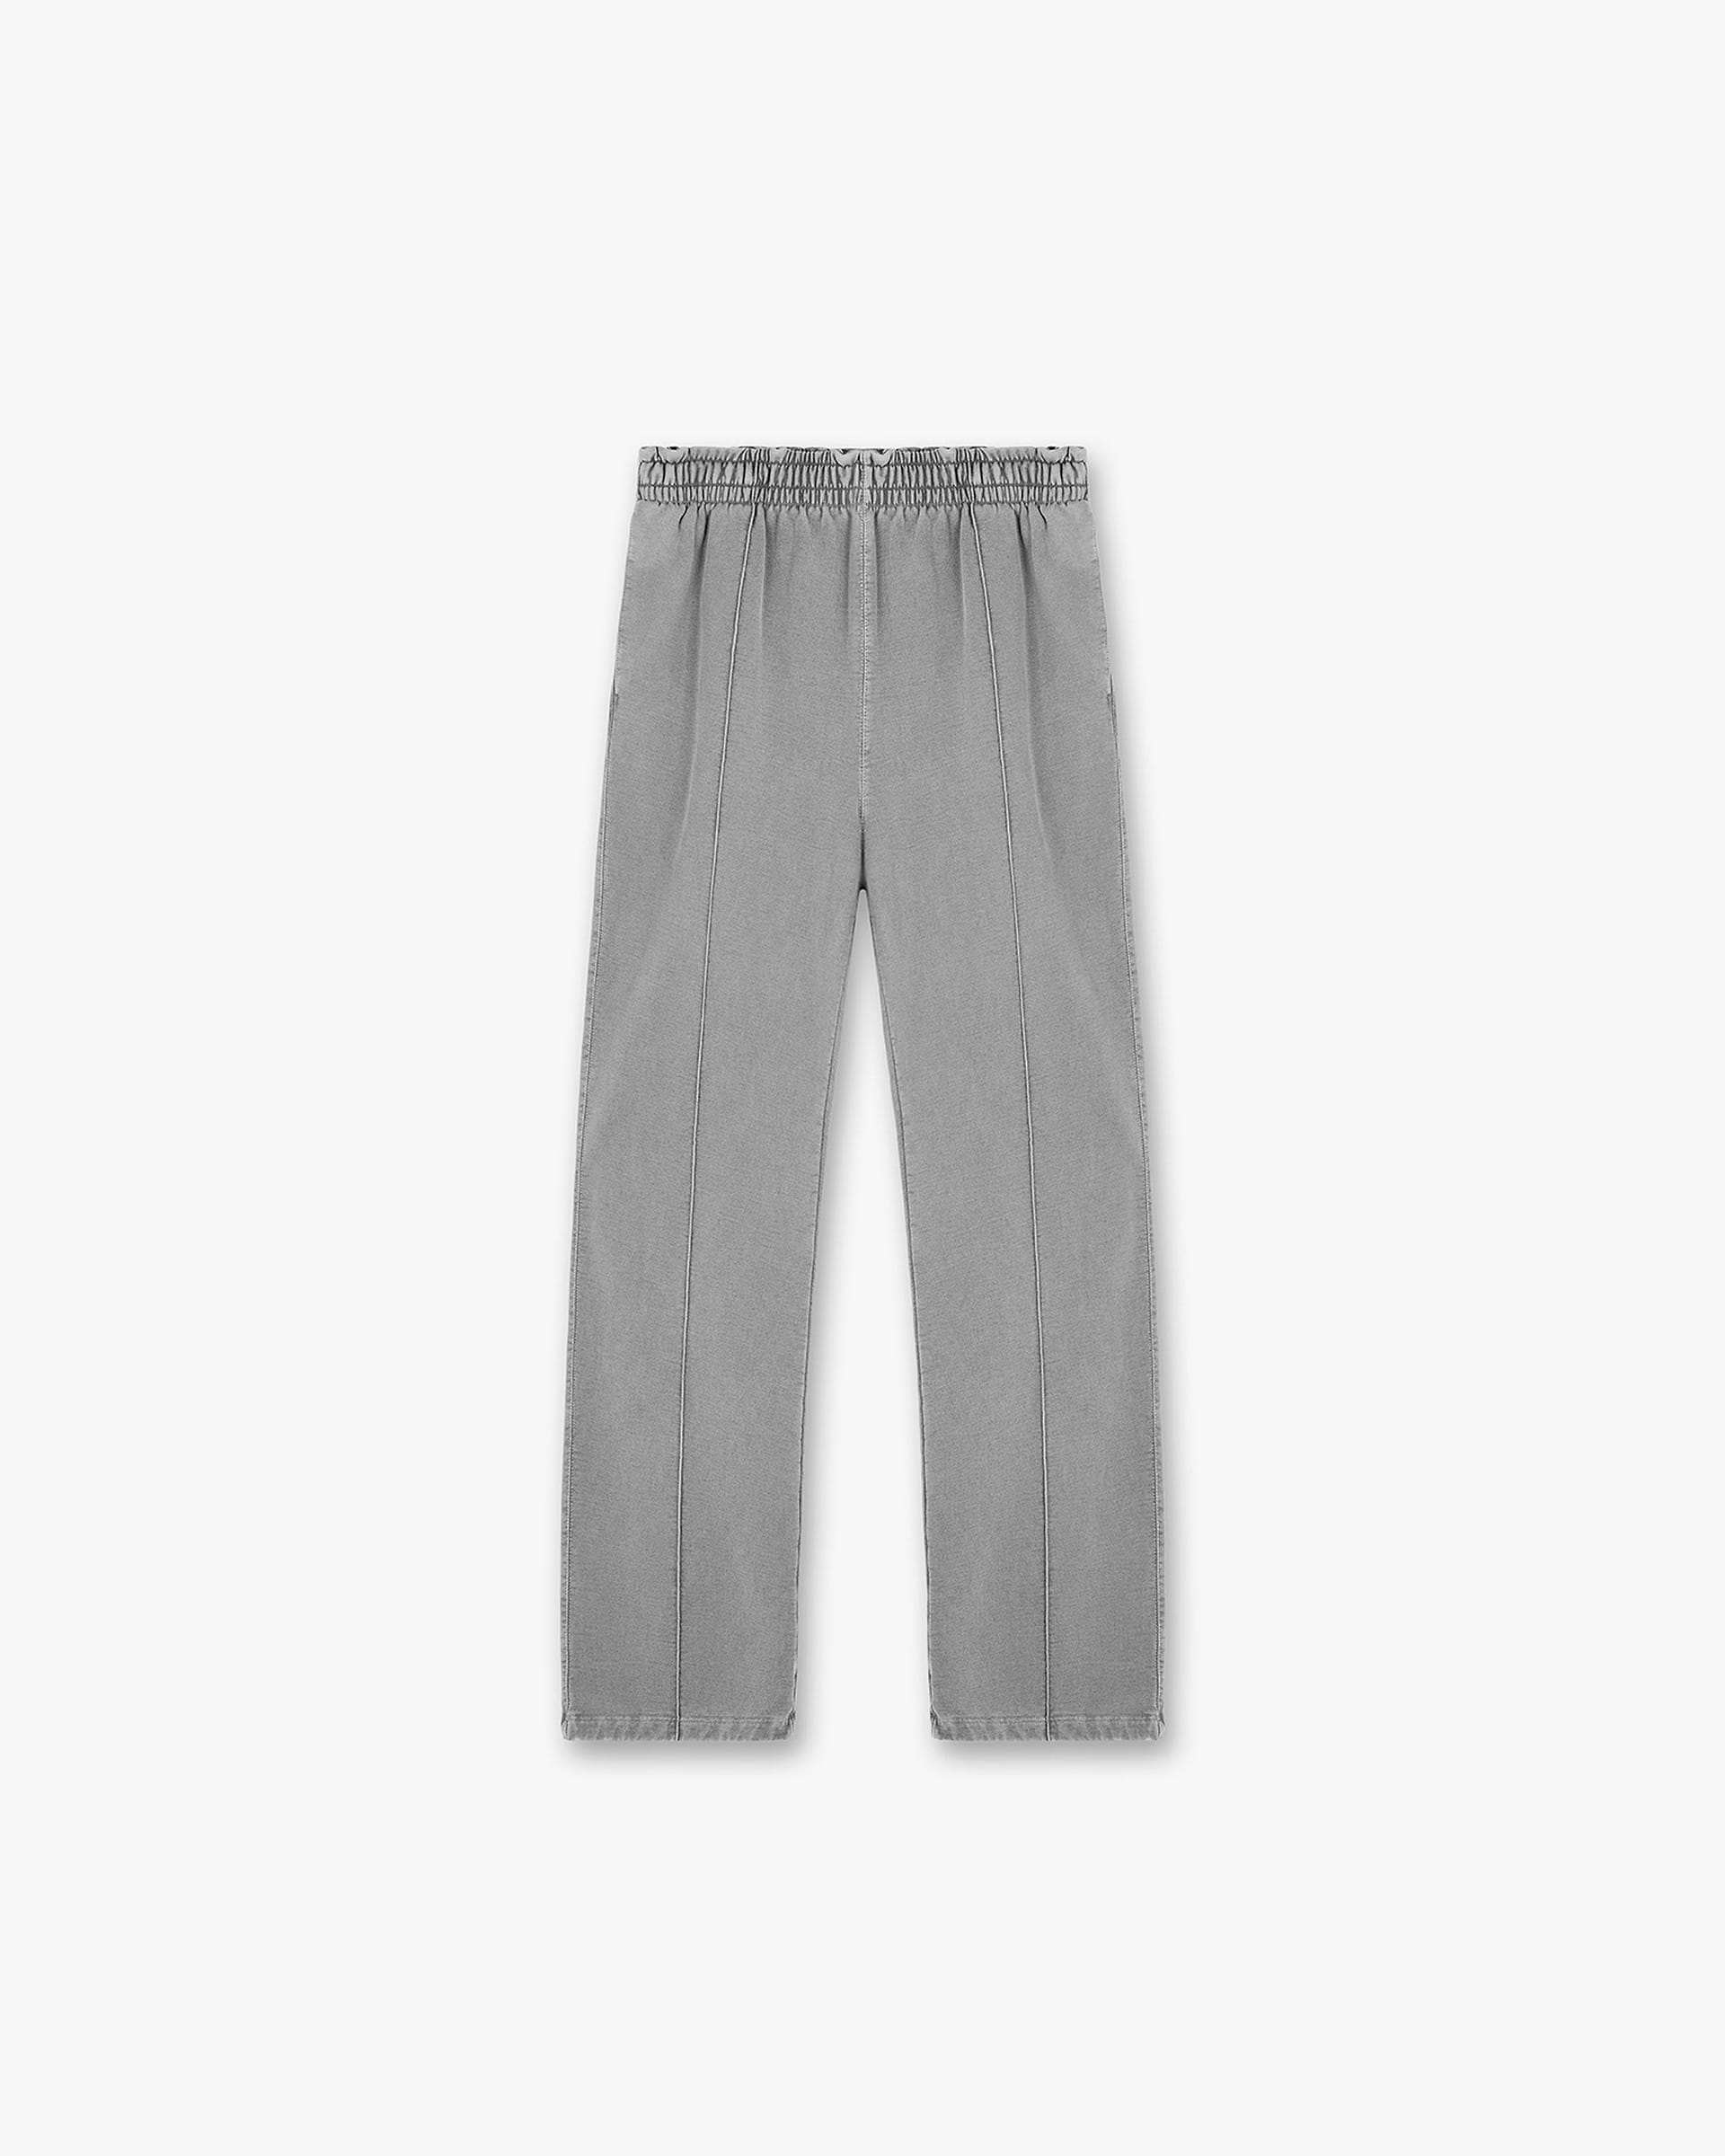 Initial Sweatpant | Ultimate Grey Pants Initial | Represent Clo